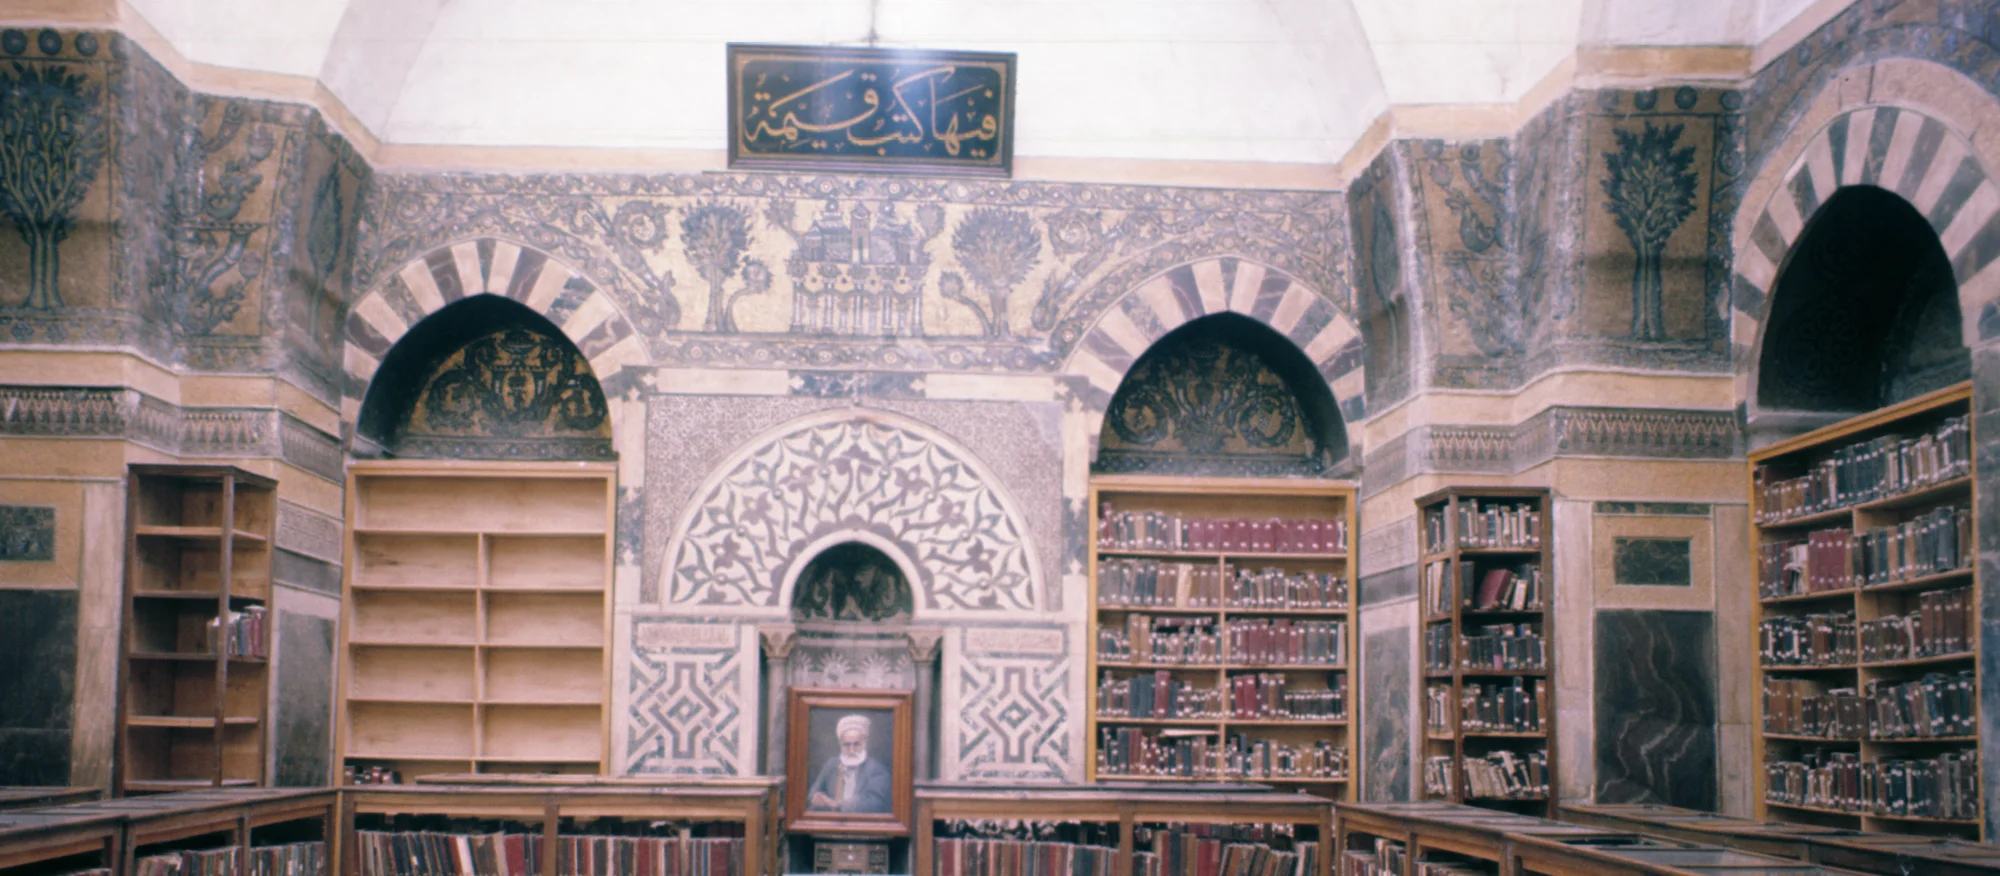 Mausoleum az-Zahir Baybars, mosaics covering the southern wall